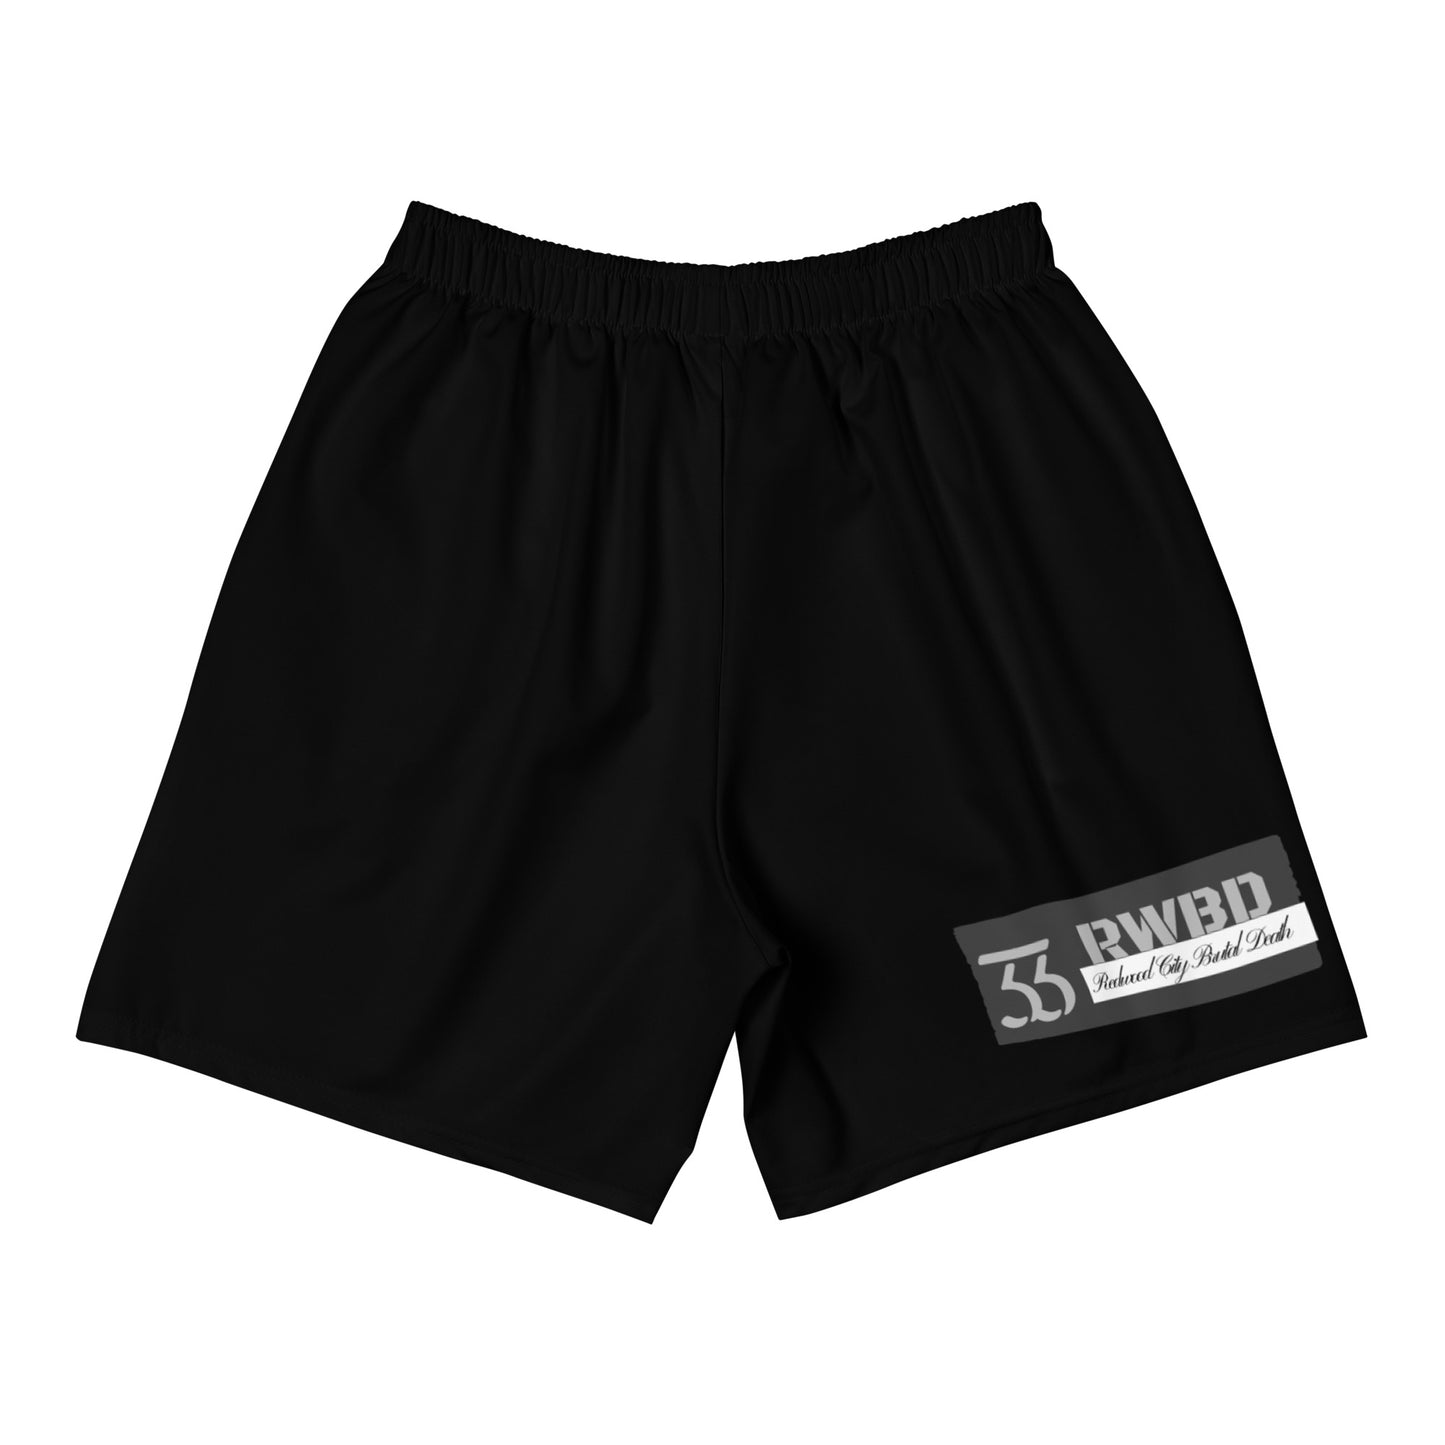 Slime n Scram Shorts - Men's, Black